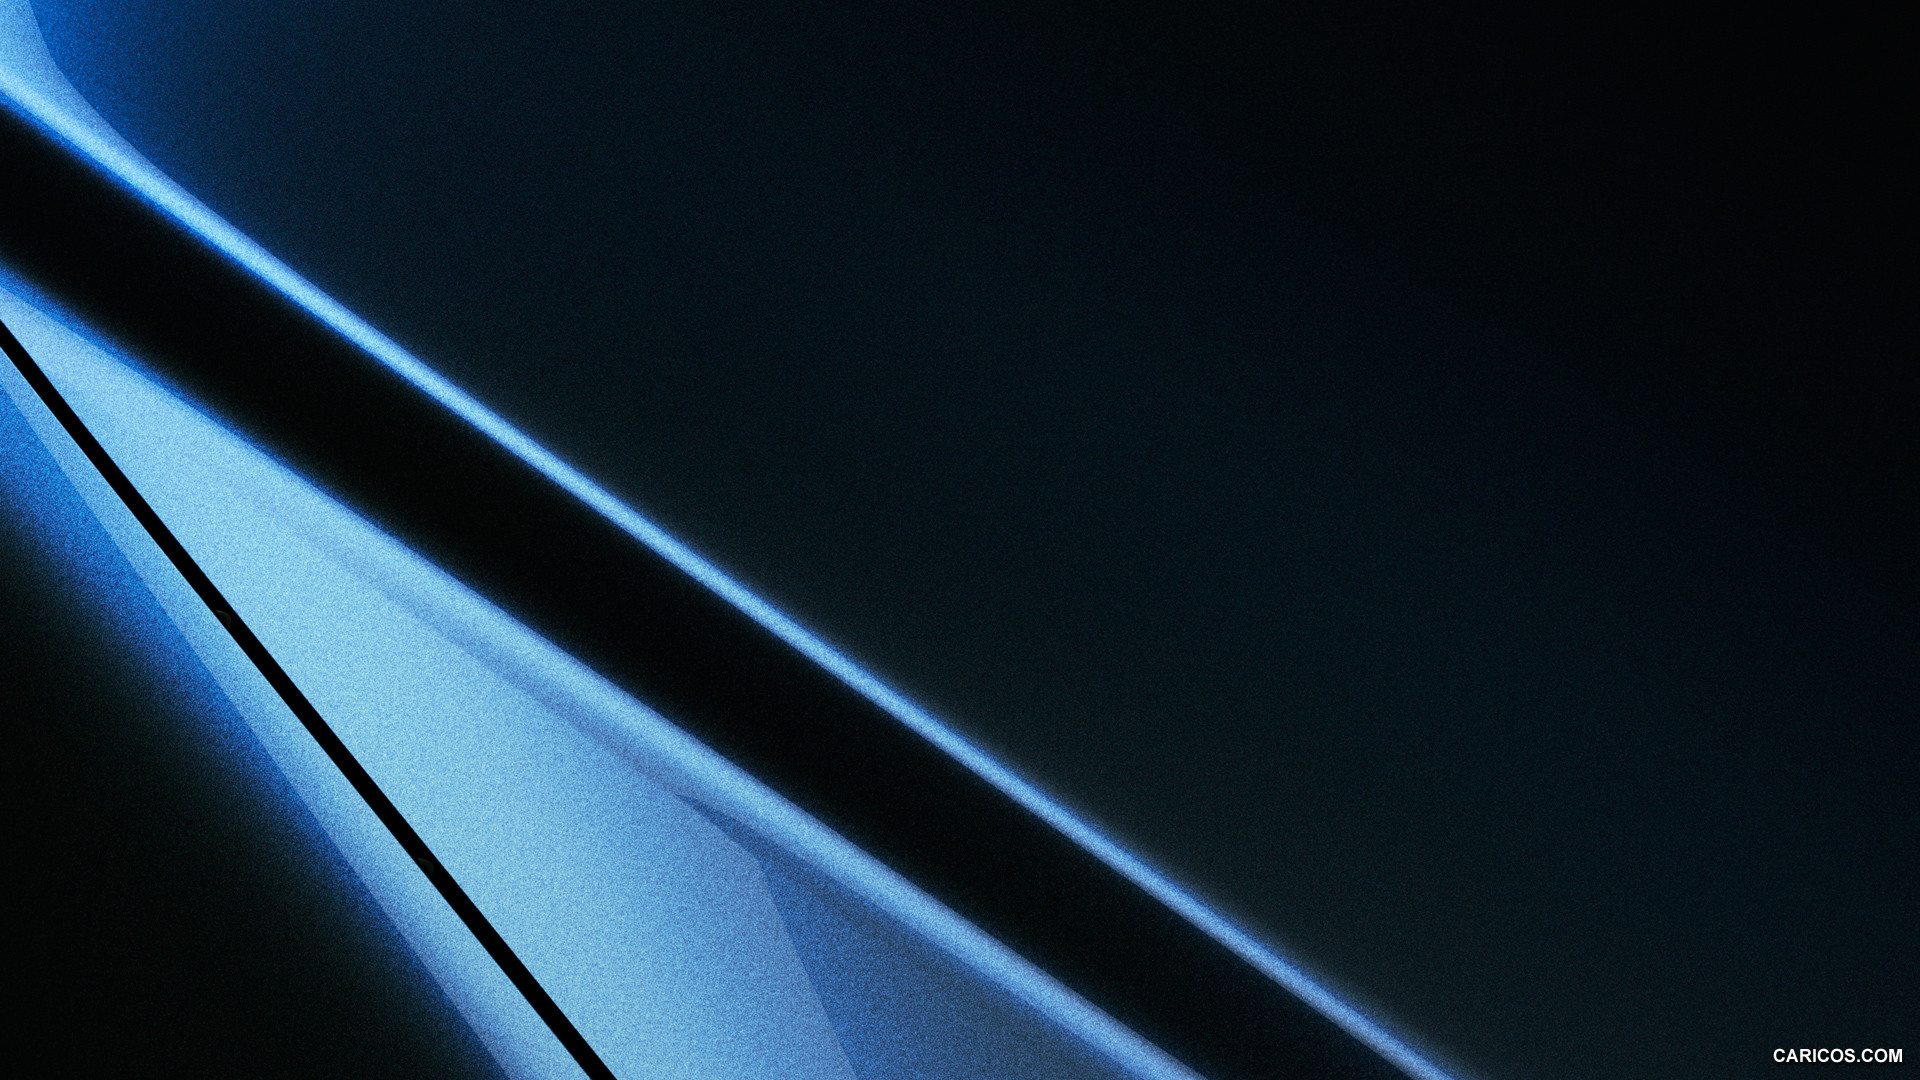 2016 Mazda CX-3 - Deep Crystal Blue - , #258 of 285